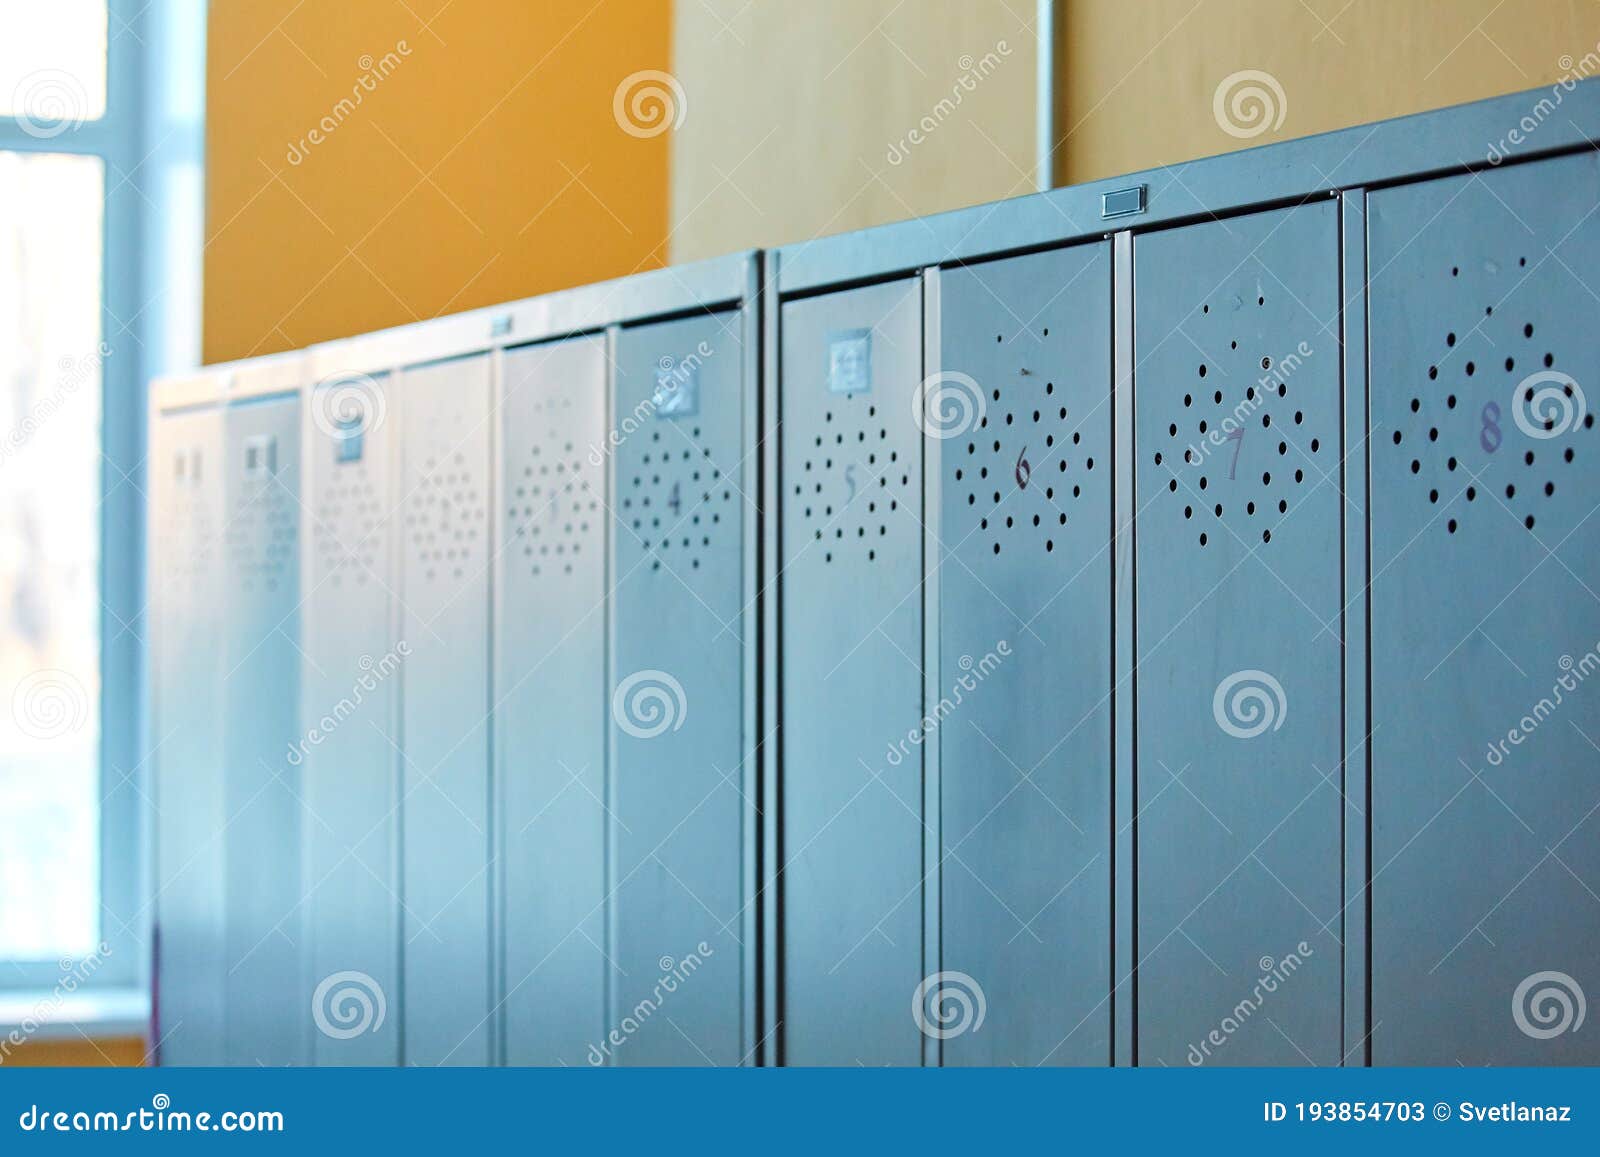 Aarde Onderscheid beu Grijze Metalen Verouderde Lockers in De Lege Schoolgang Van De Oude School  Stock Afbeelding - Image of schoon, zaal: 193854703